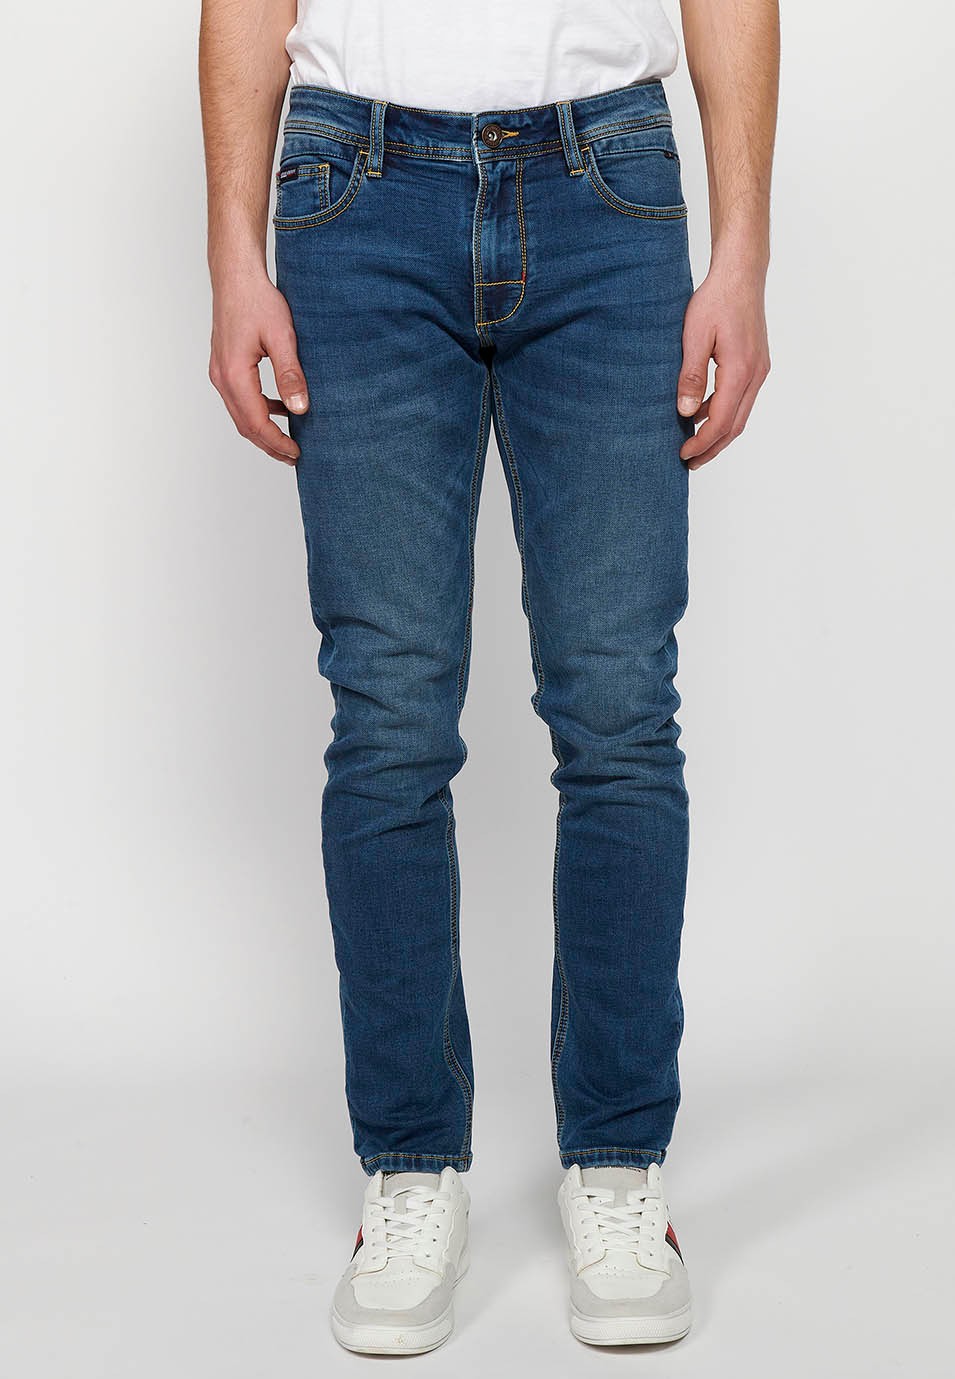 Pantalon long en jean coupe slim avec cinq poches, une poche match, Bleu pour Homme